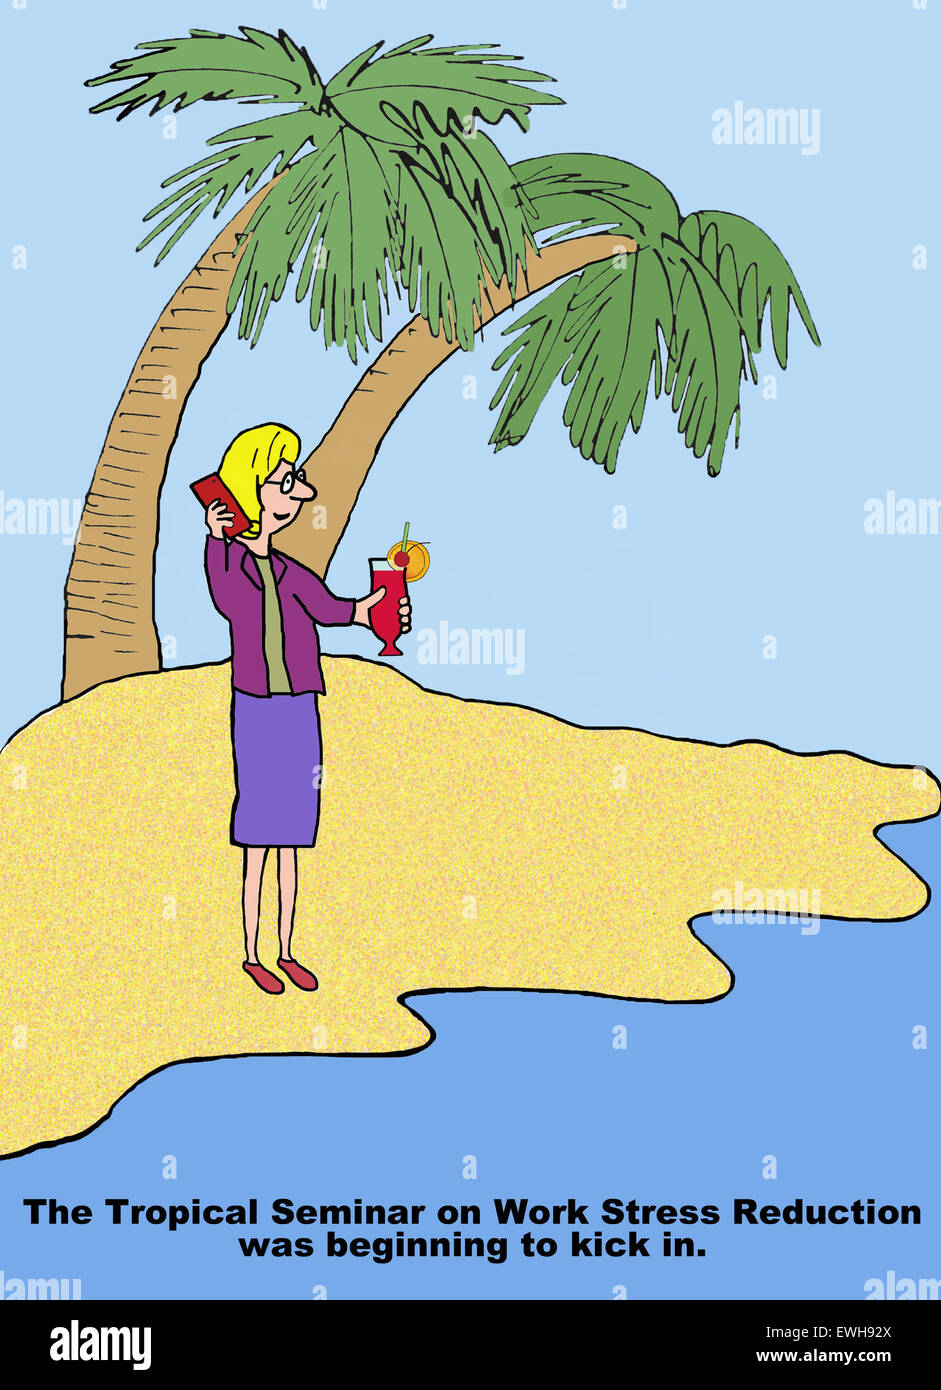 Business-Cartoon der Geschäftsfrau auf Insel, "die tropischen Seminar zum Thema Arbeit Stressabbau anfing zu treten in". Stockfoto